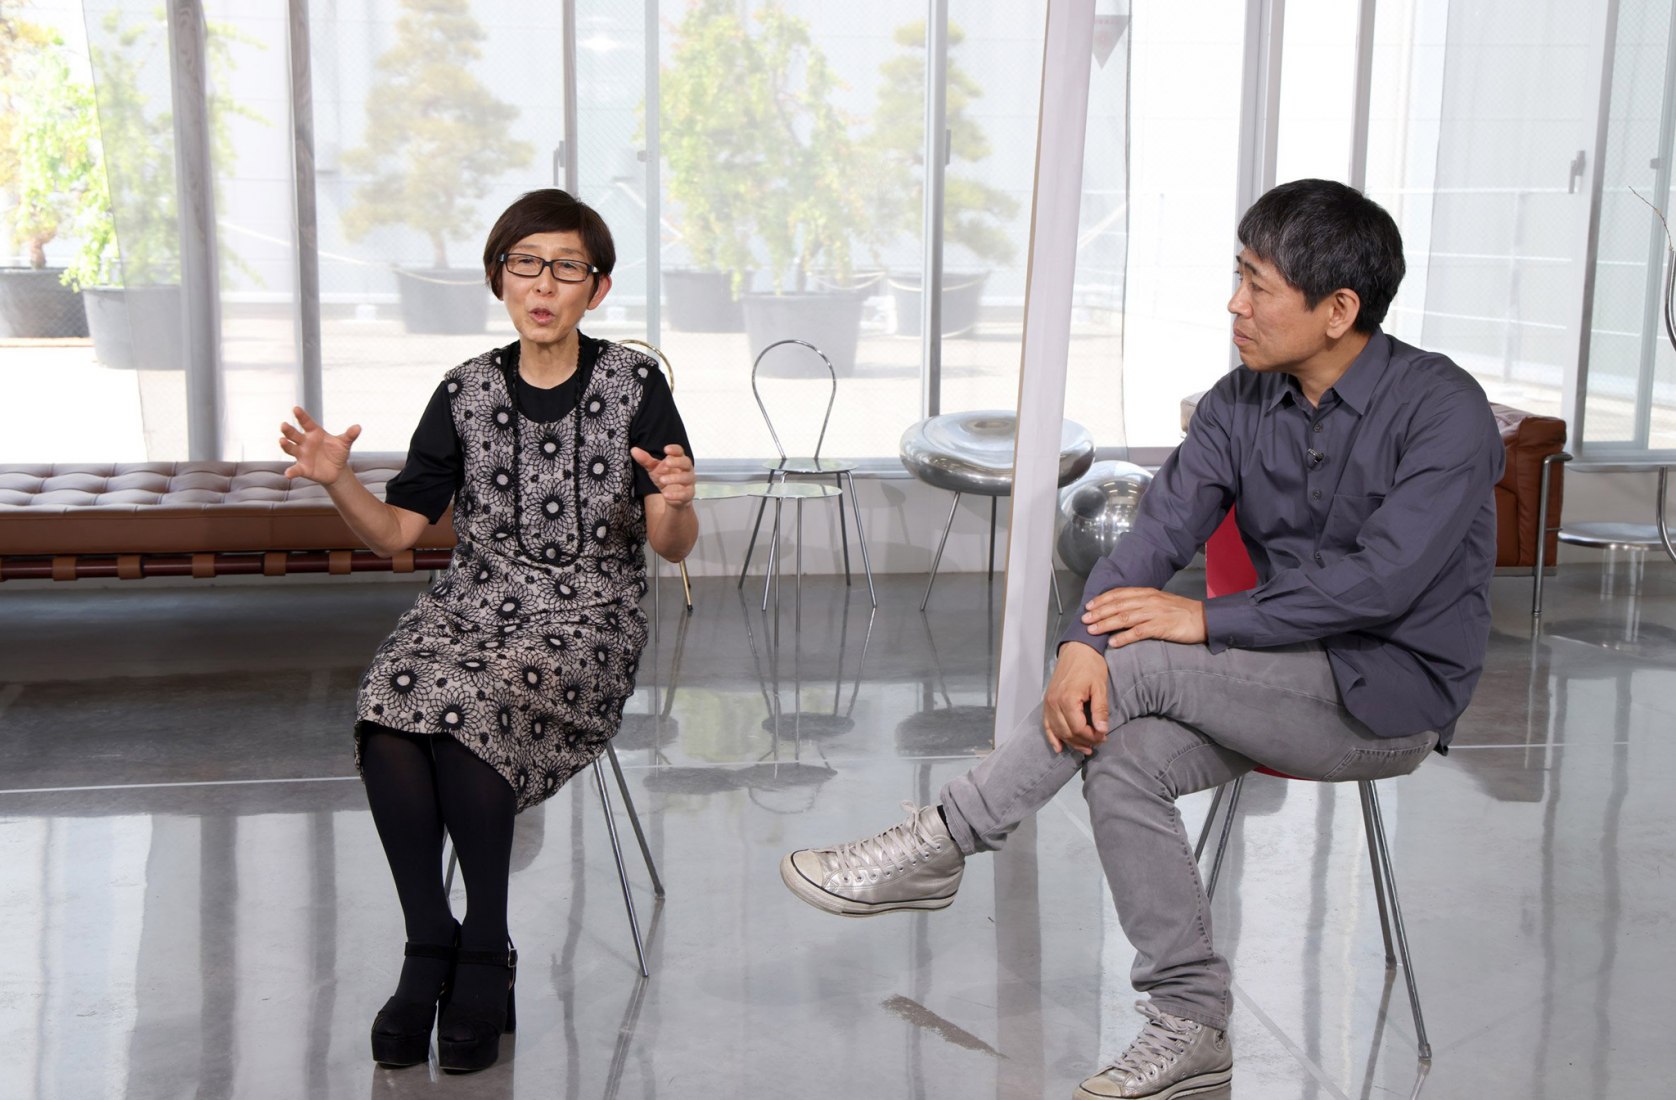 SANAA's founders Kazuyo Sejima and Ryue Nishizawa have won the 2022 Praemium Imperiale for architecture